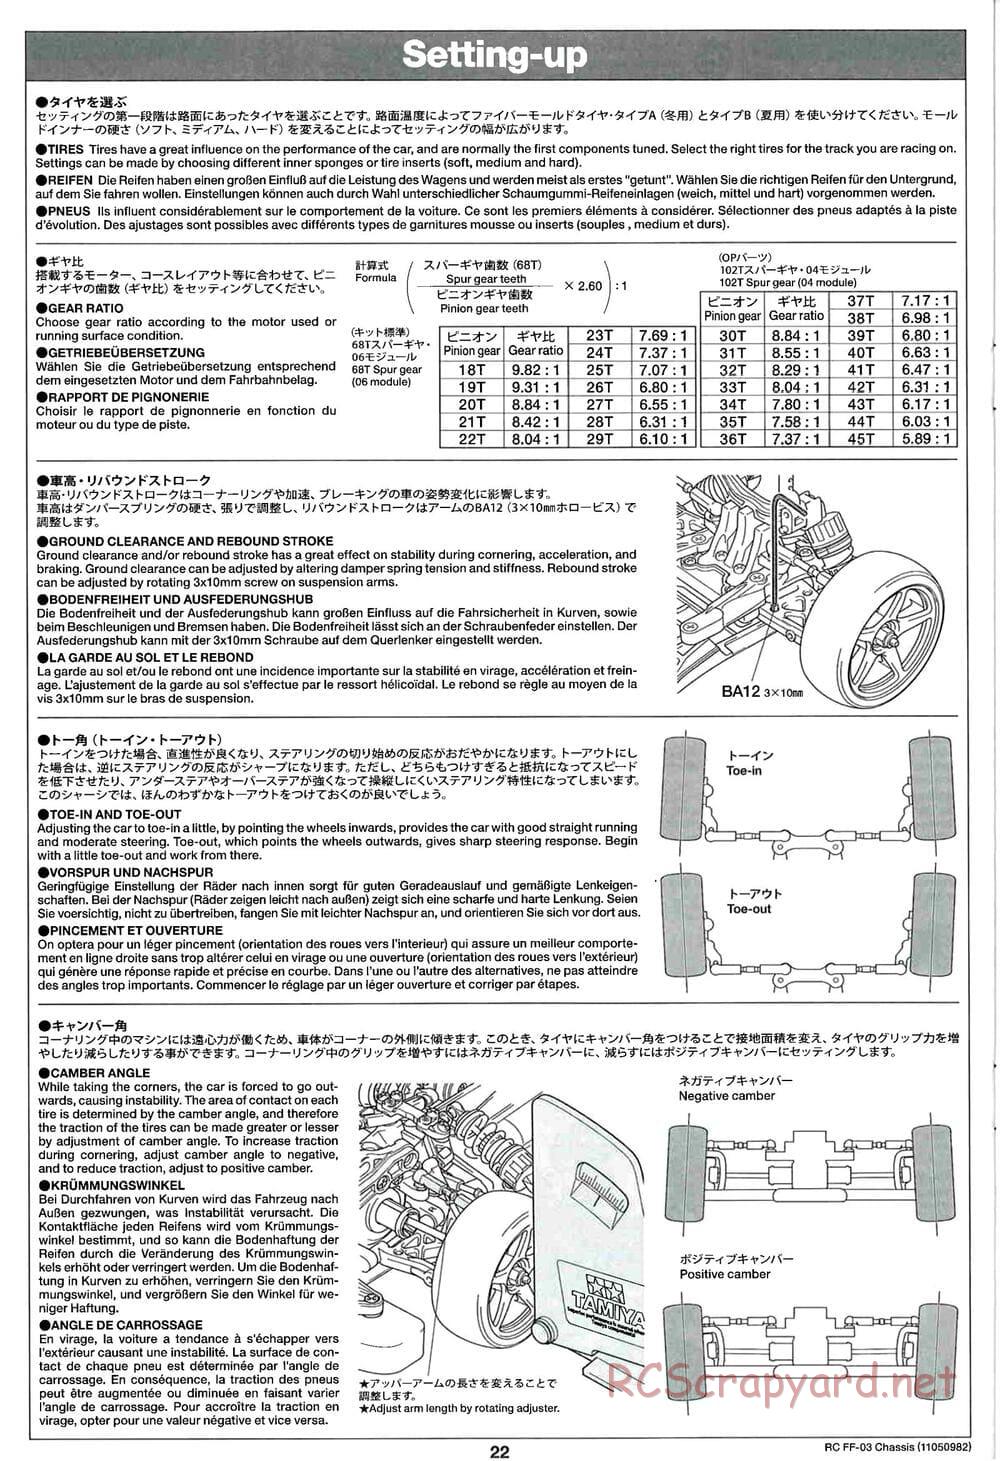 Tamiya - Castrol Honda Civic VTi - FF-03 Chassis - Manual - Page 22